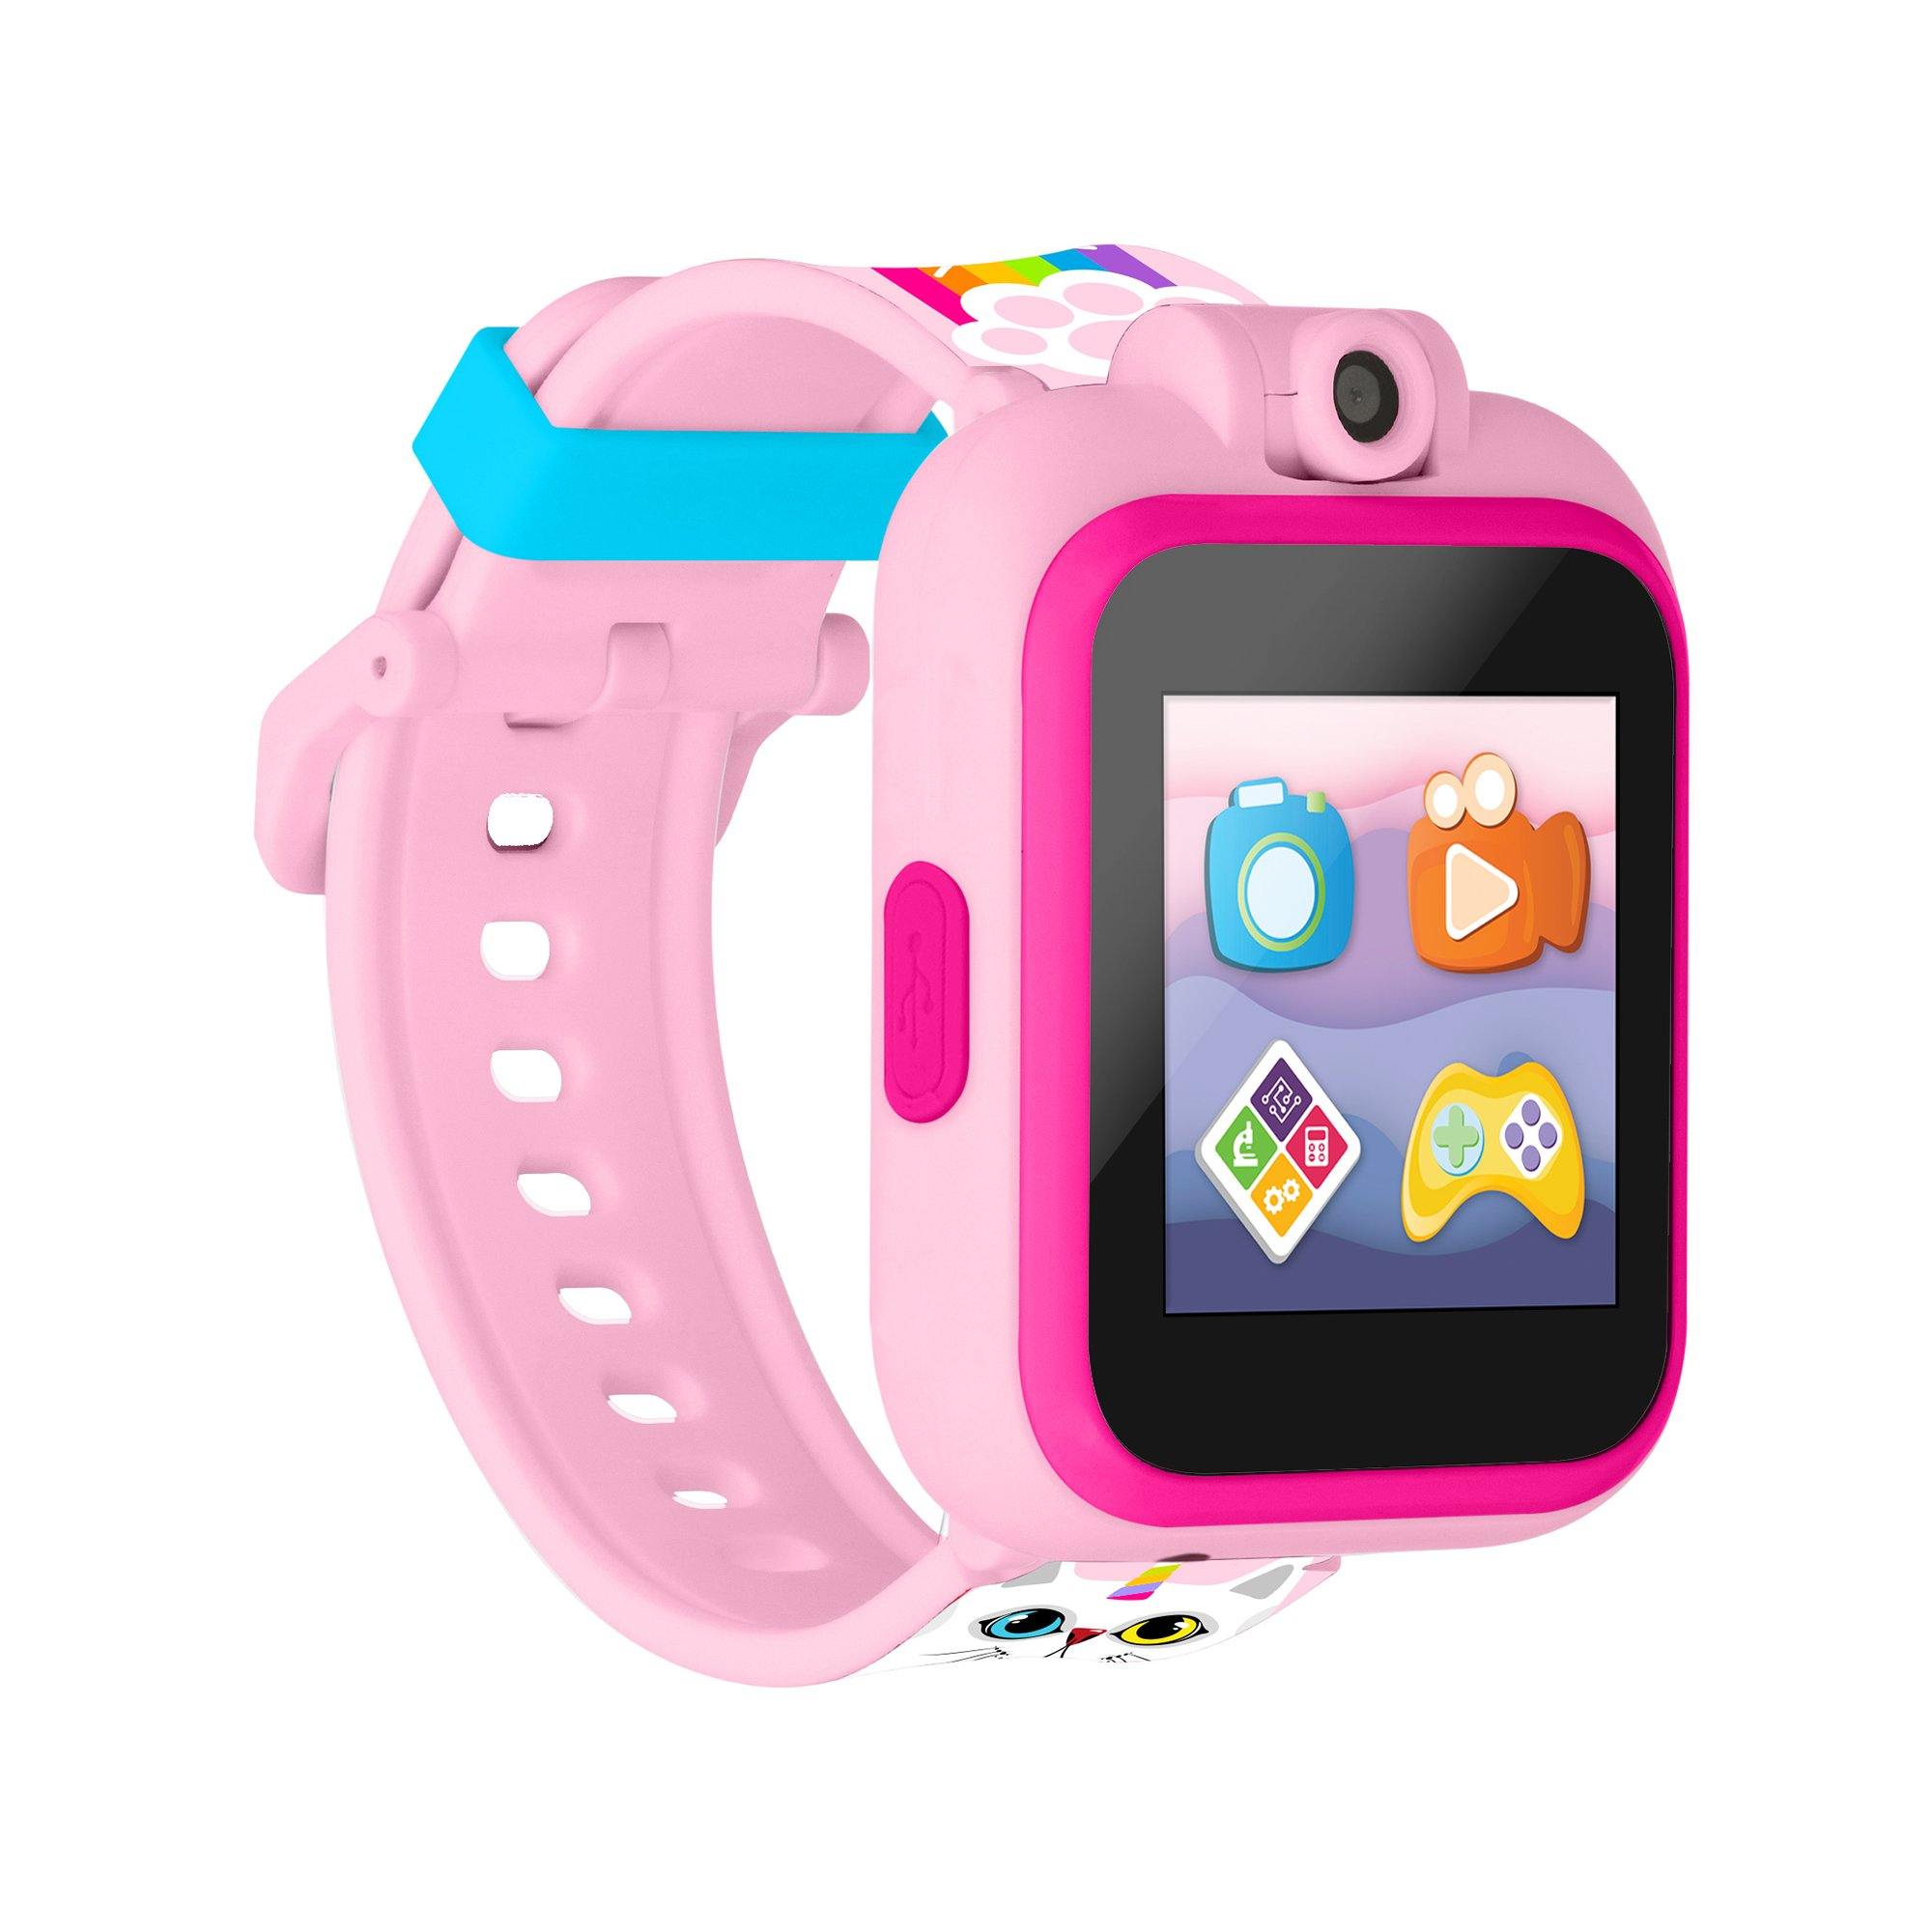 PlayZoom 2 Kids Smartwatch: Blush Unicorn Kitty affordable smart watch